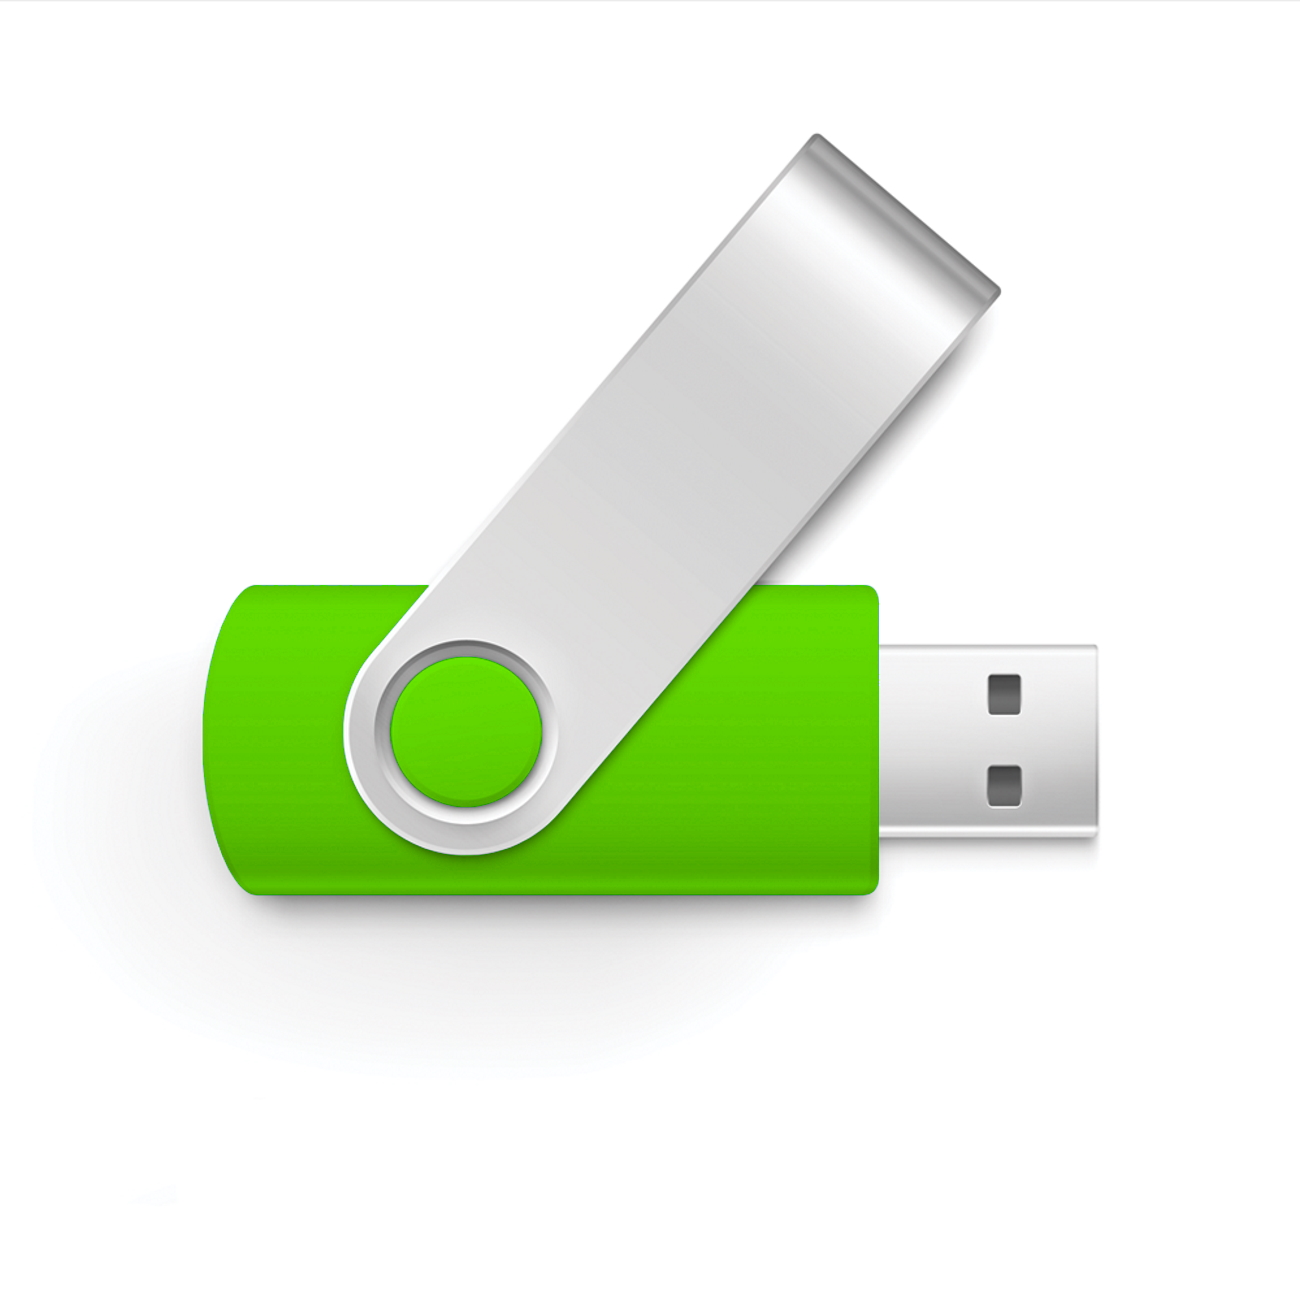 USB GERMANY Swivel USB-Stick GB) 16GB 16 (Green